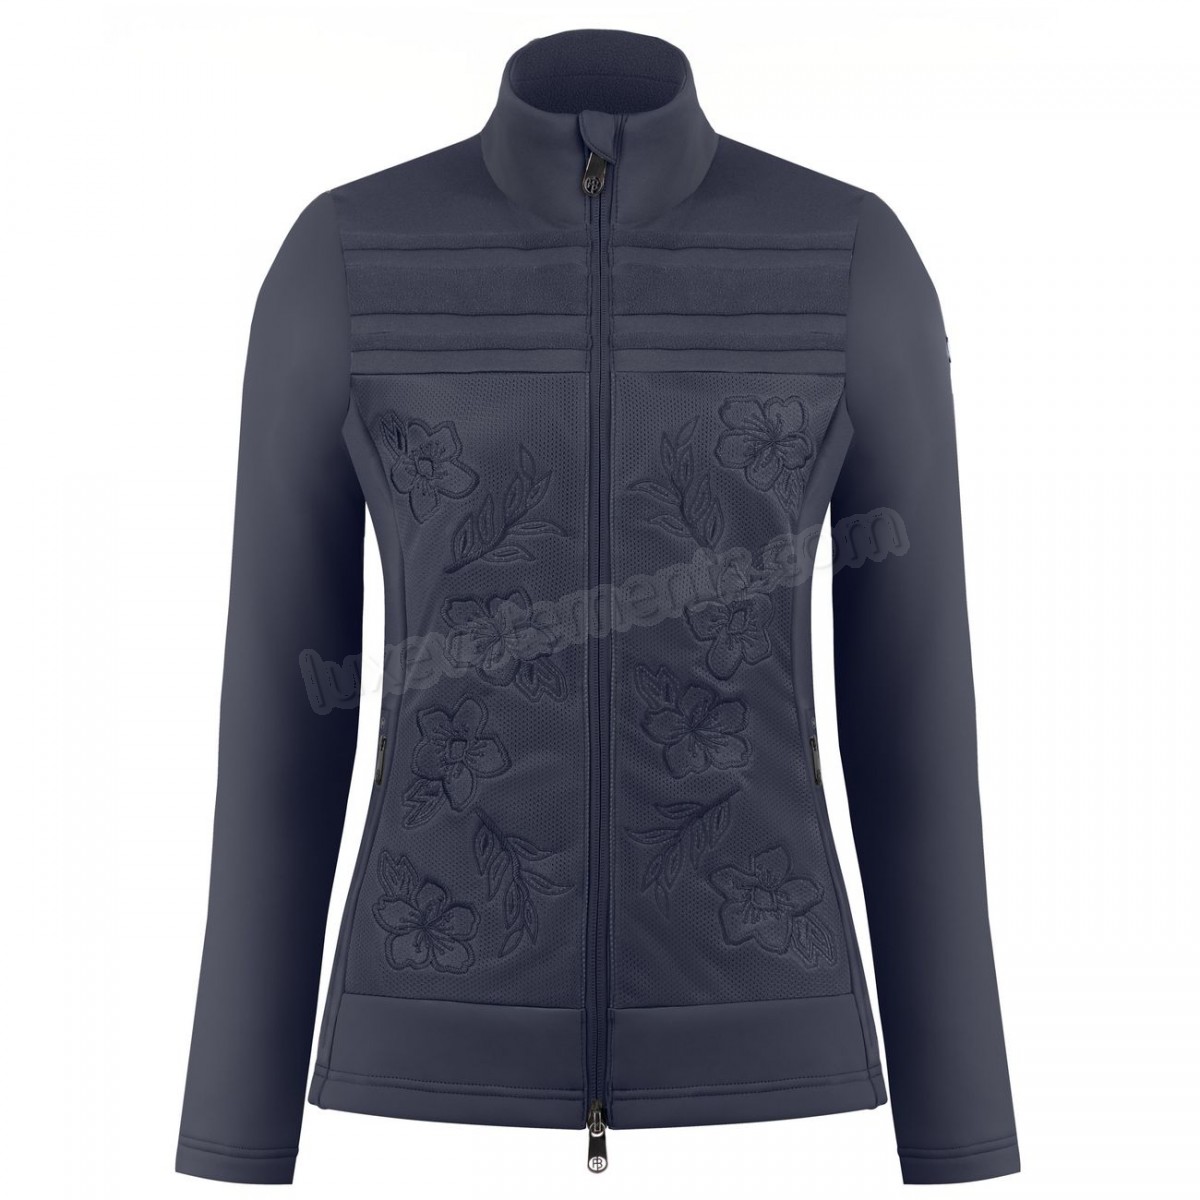 Poivre Blanc-Sports d'hiver femme POIVRE BLANC Veste Polaire Poivre Blanc Hybrid Stretch Fleece Jacket 1605 Gothic Blue 4 Femme Vente en ligne - -3